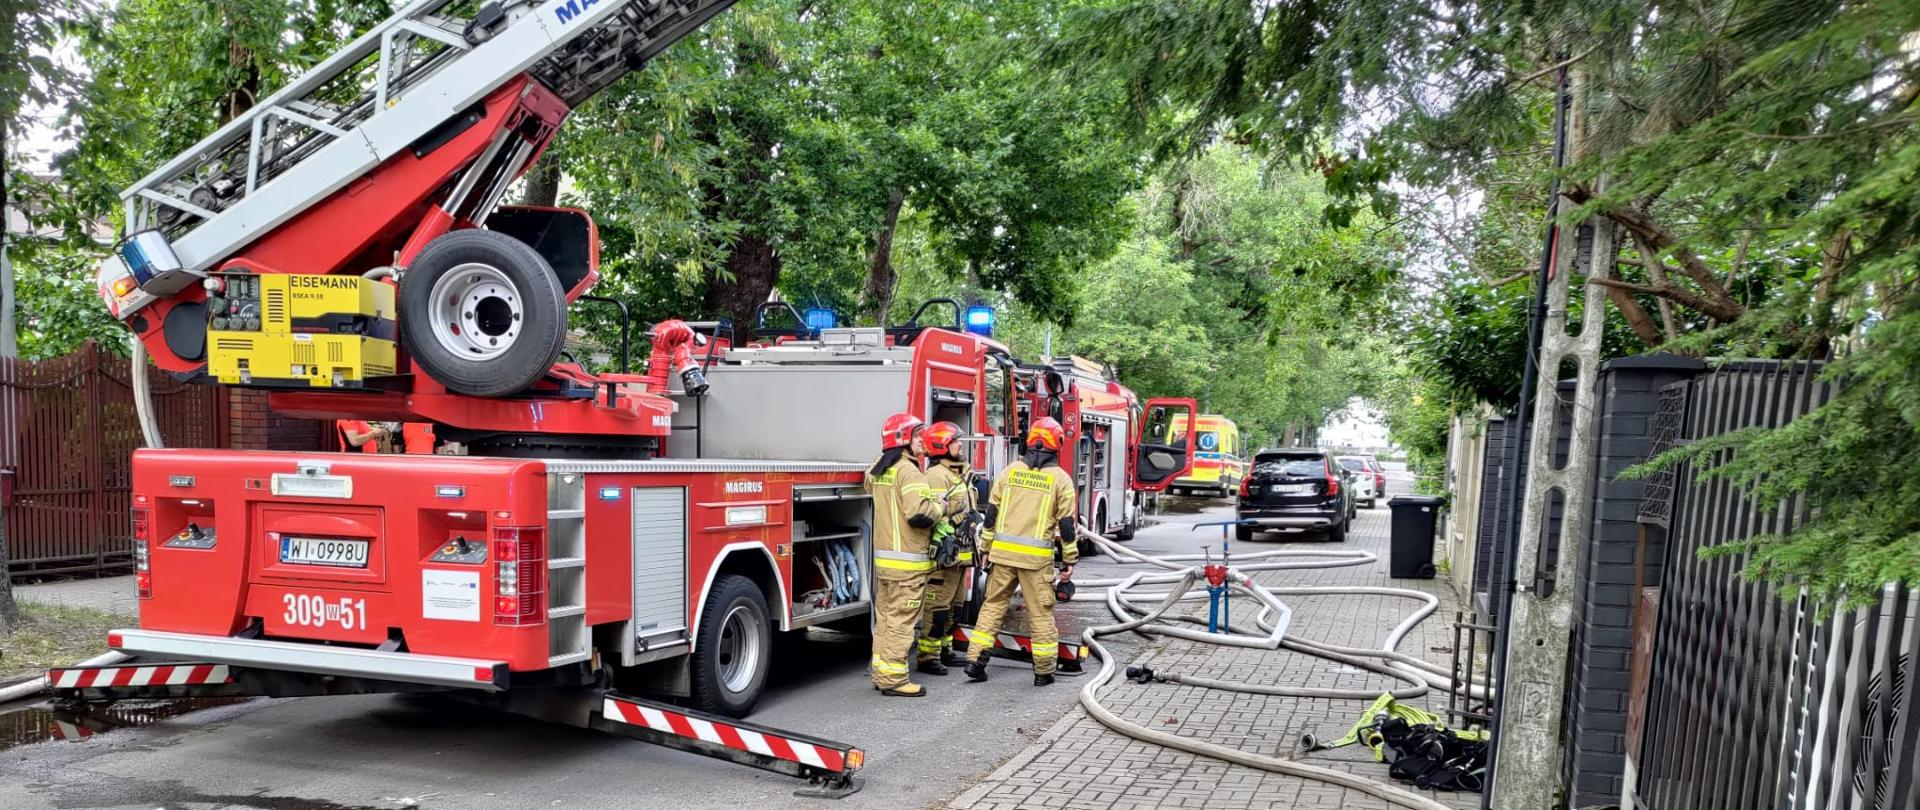 Na zdjęciu widoczne są samochody straży pożarnej, pracujący strażacy. Na zdjęciu widoczne są również linie wężowe oraz widoczna jest karetka pogotowia